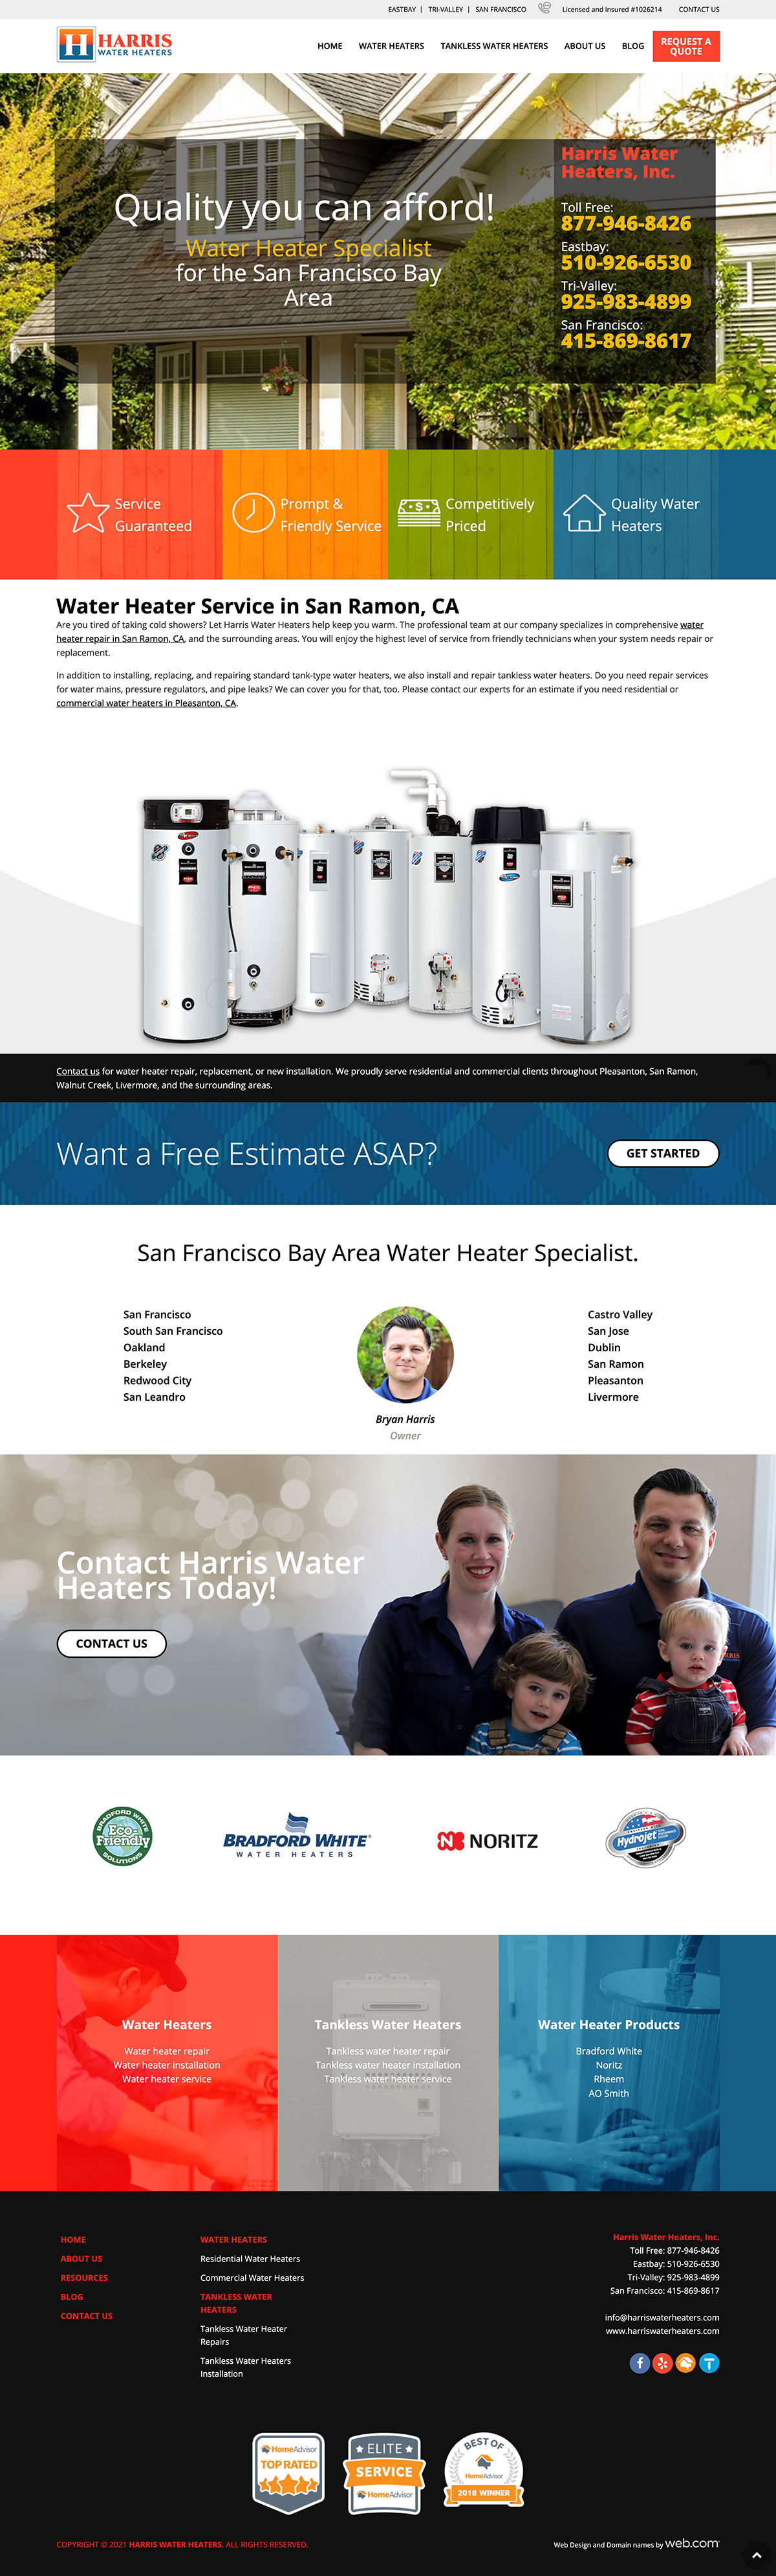 harris-water-heaters-website-old